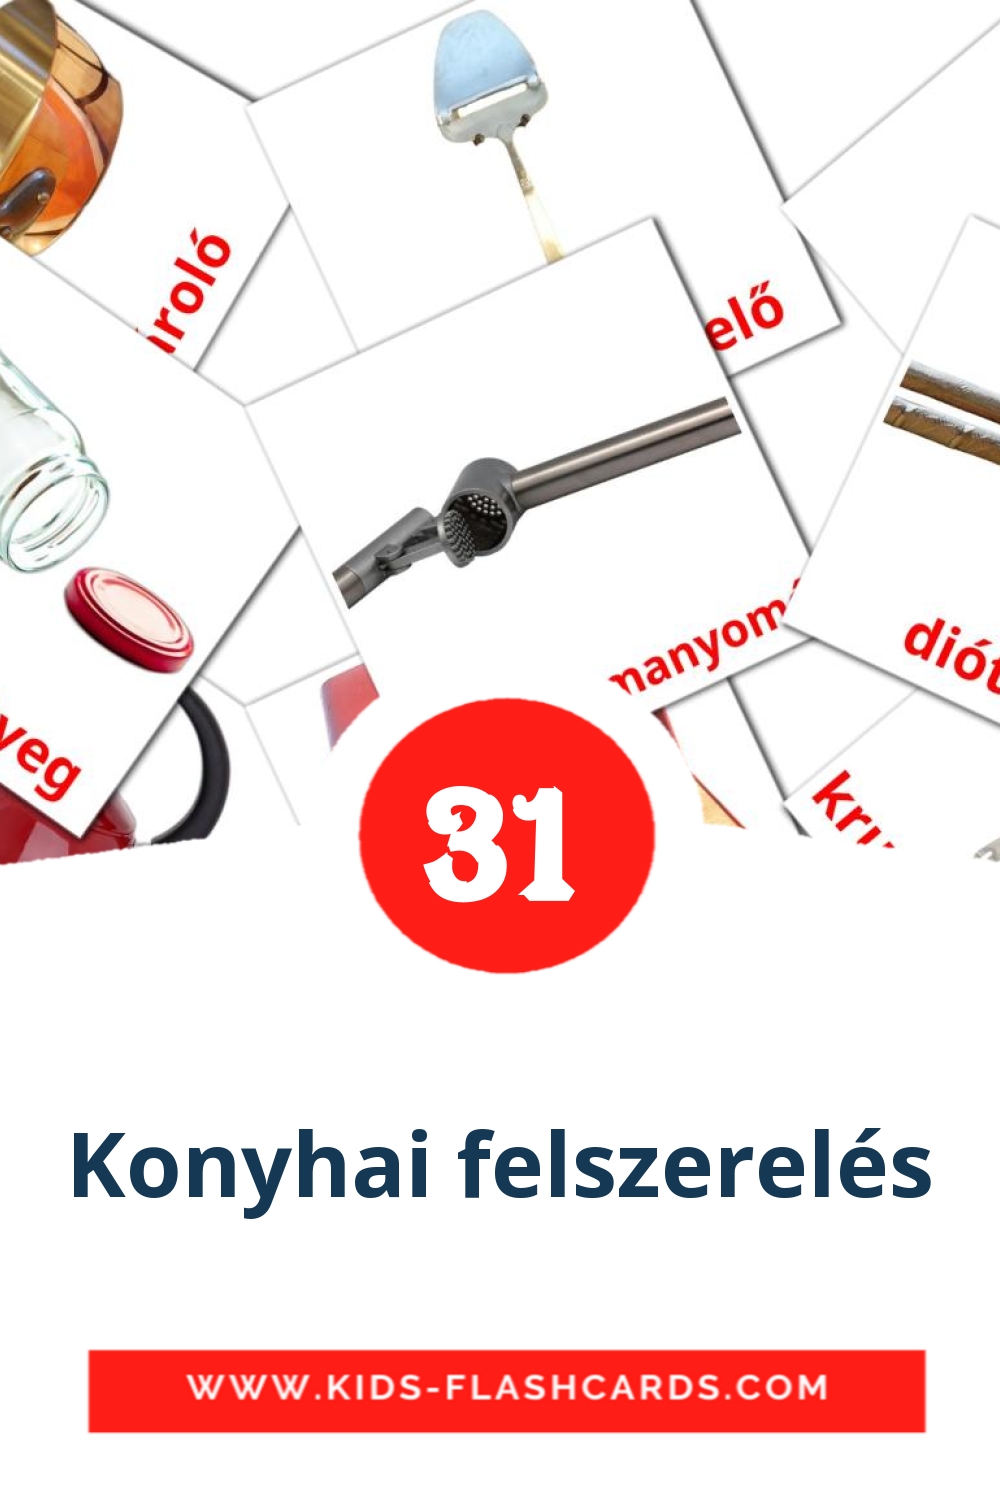 Konyhai felszerelés на венгерском для Детского Сада (35 карточек)